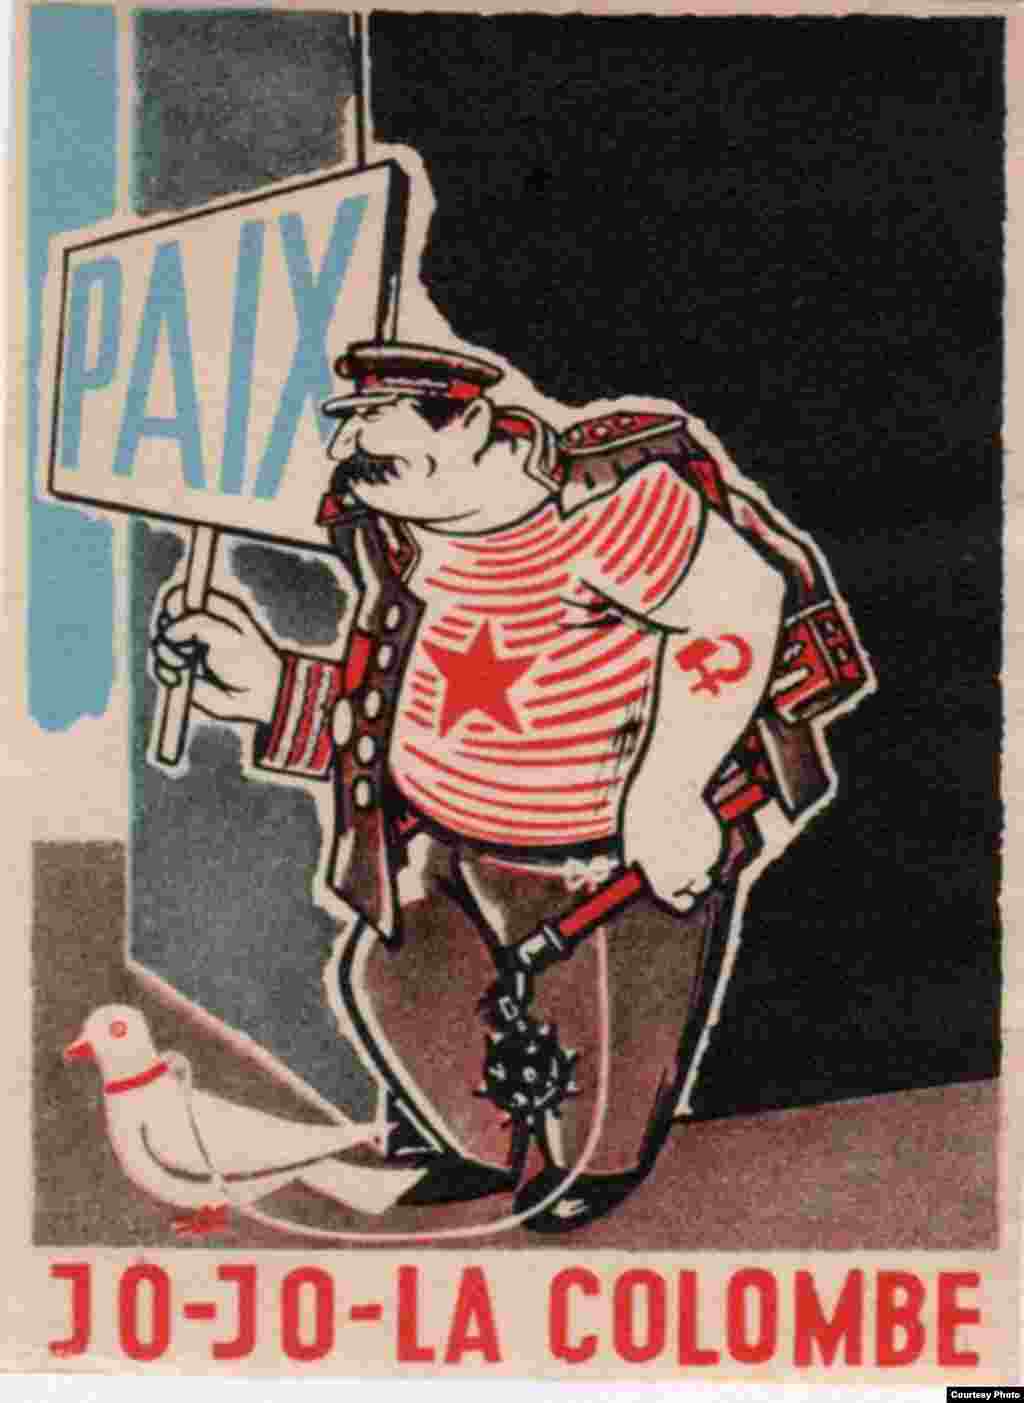 Карикатура на Сталина. В руках у него траспарант с надписью "Мир" и подпись "Йо -йо, голубь мира"  